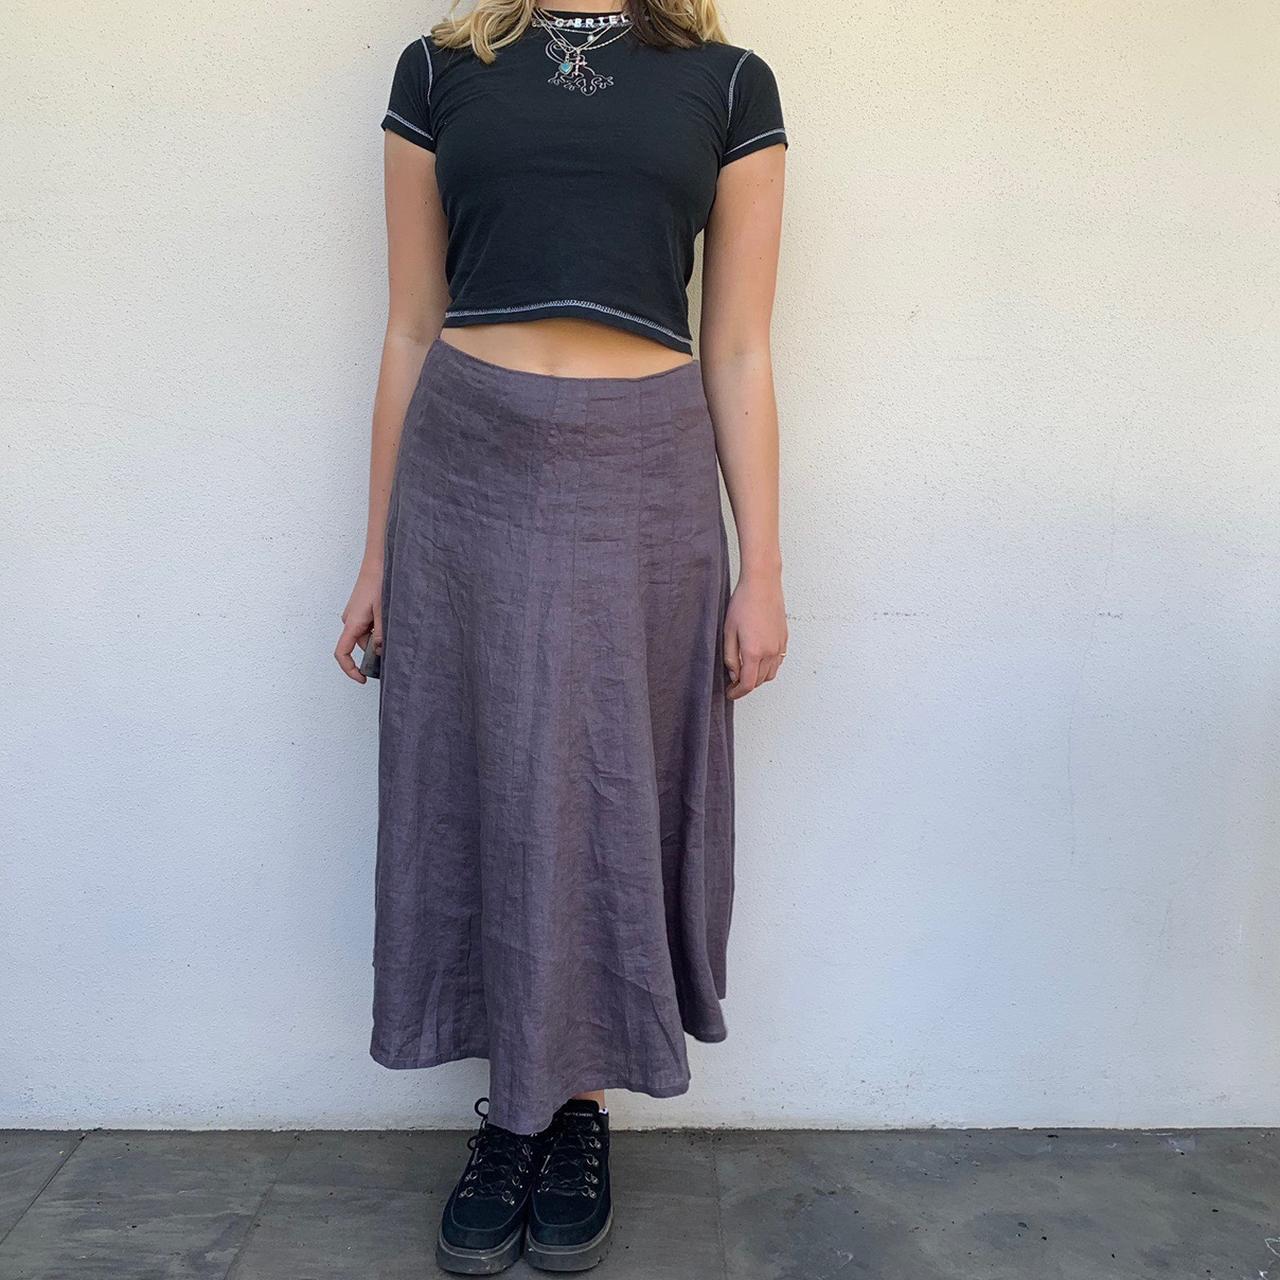 Dark grey linen maxi skirt. Size 8 but was a bit big... - Depop